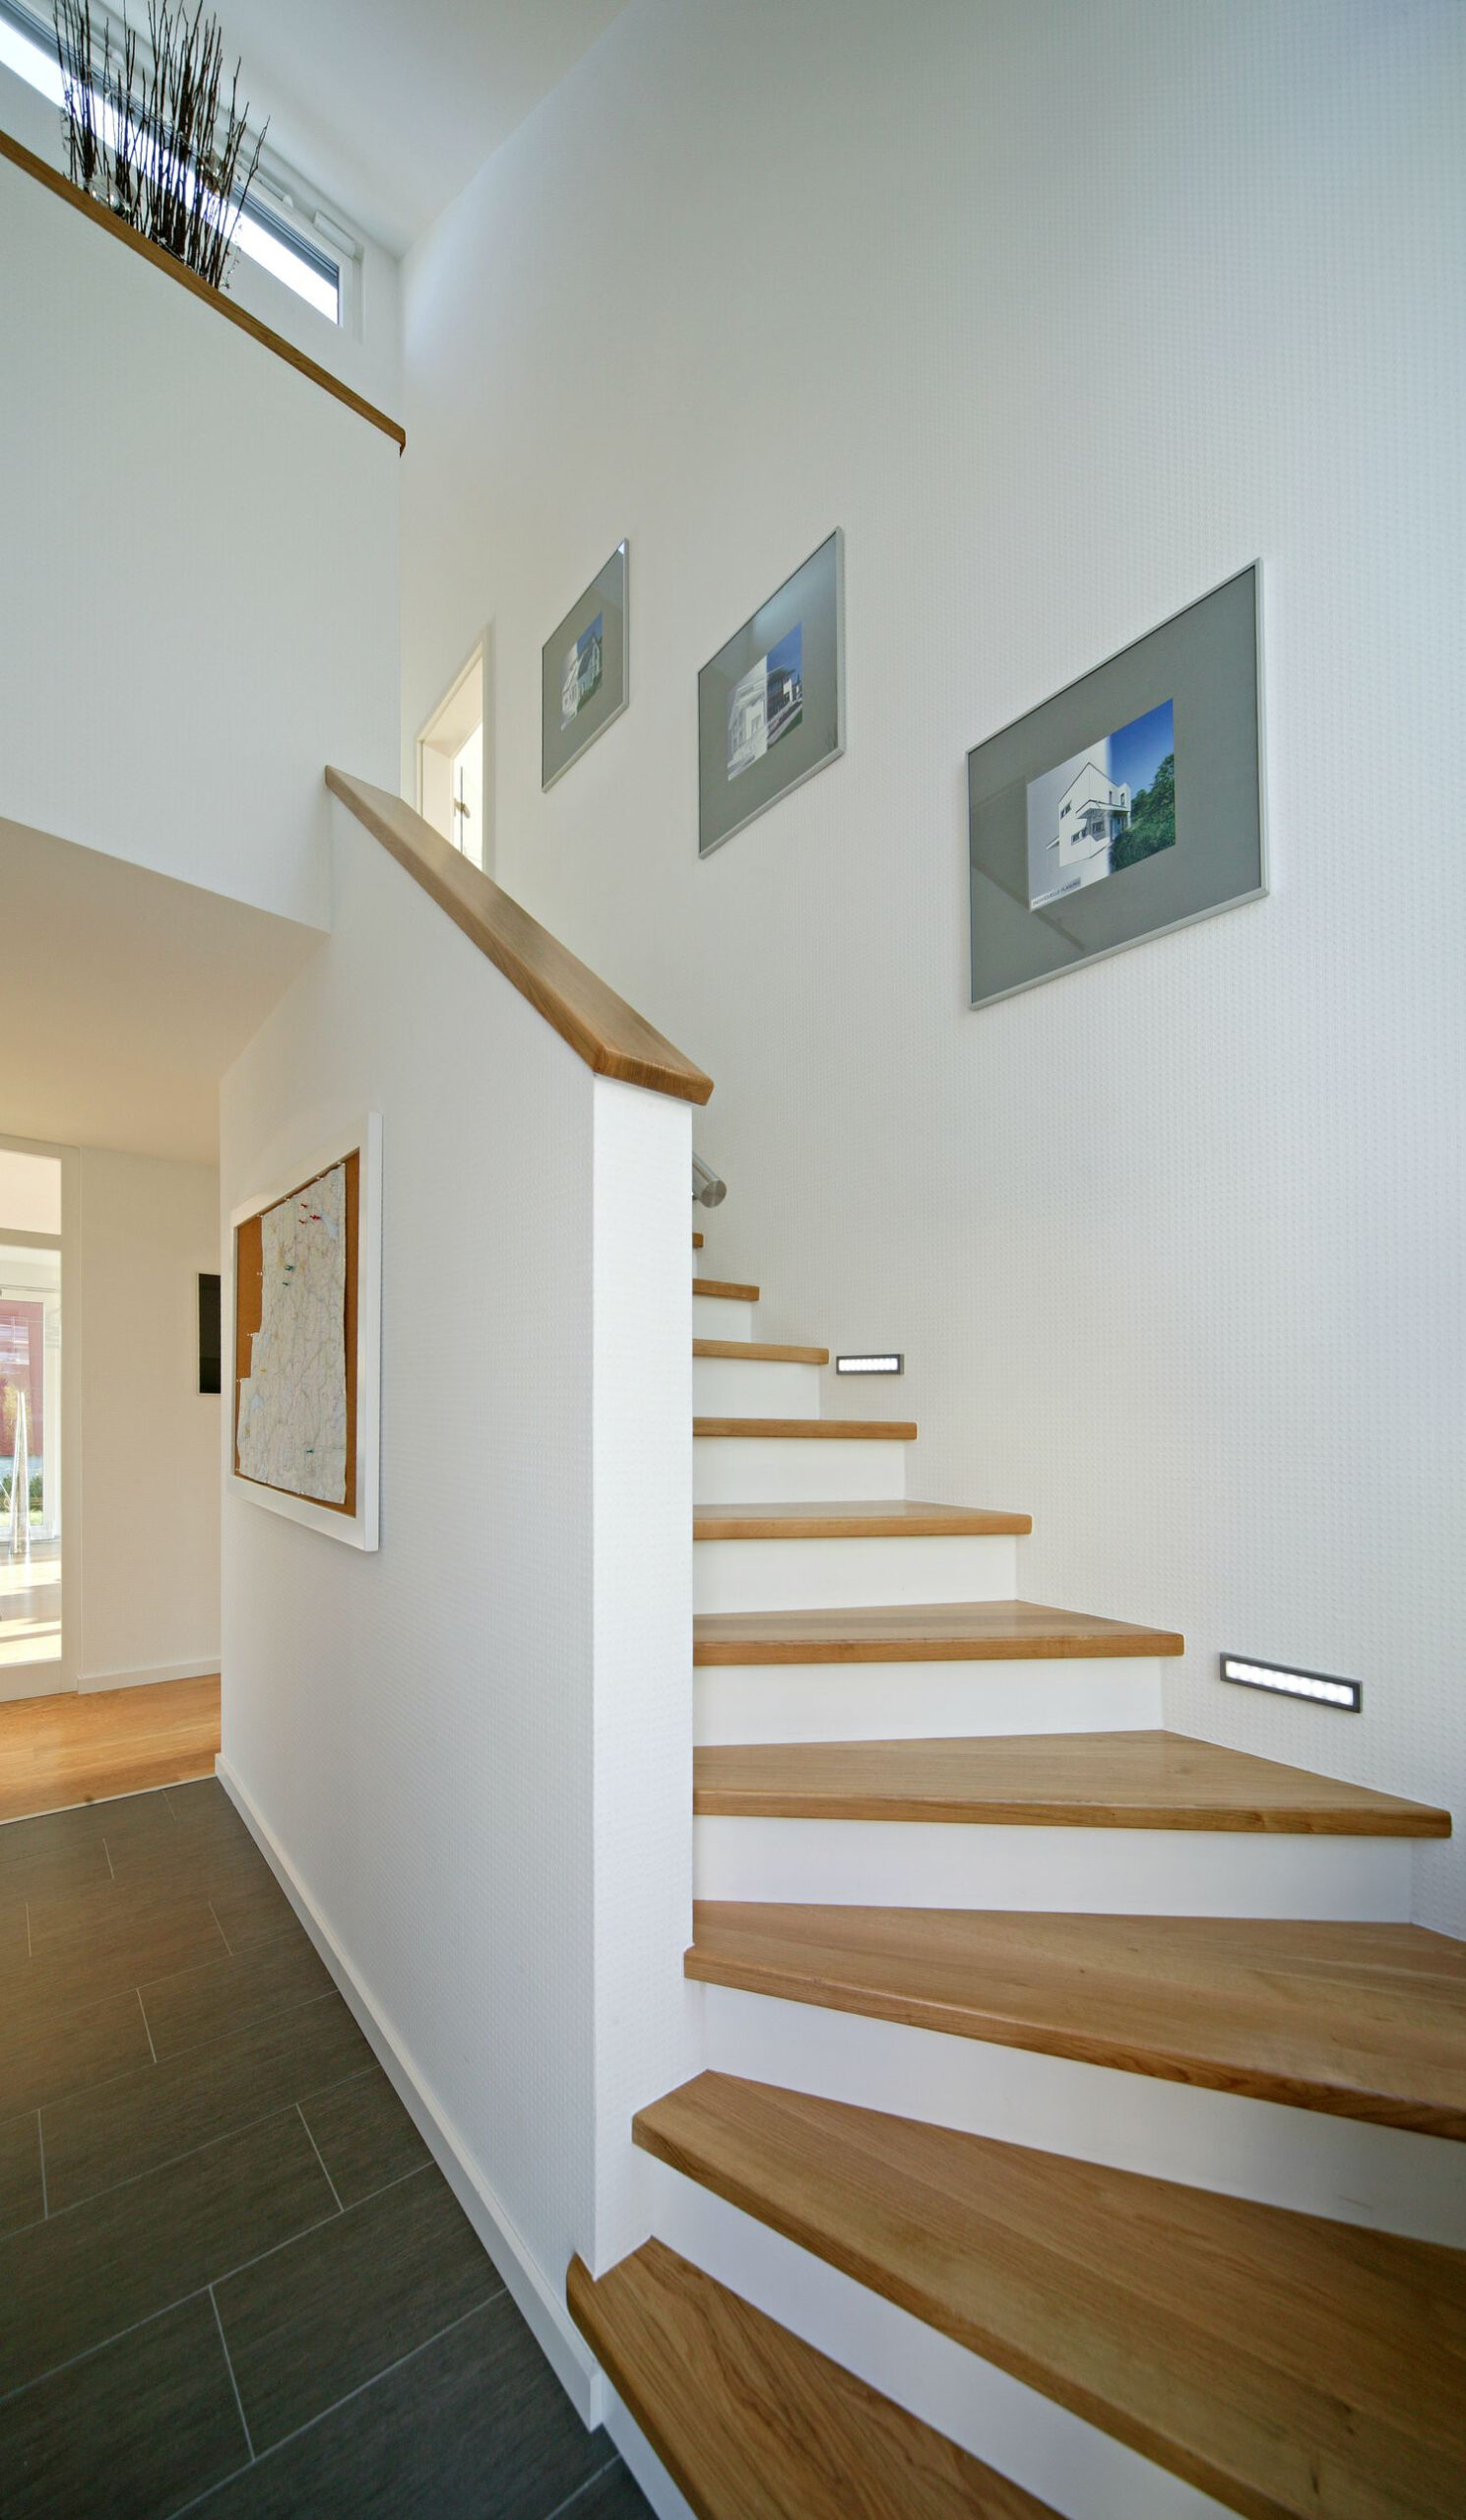 Die Besten 25+ Treppen Innen Ideen Auf Pinterest  Innen Treppen verwandt mit Moderne Treppen Ideen